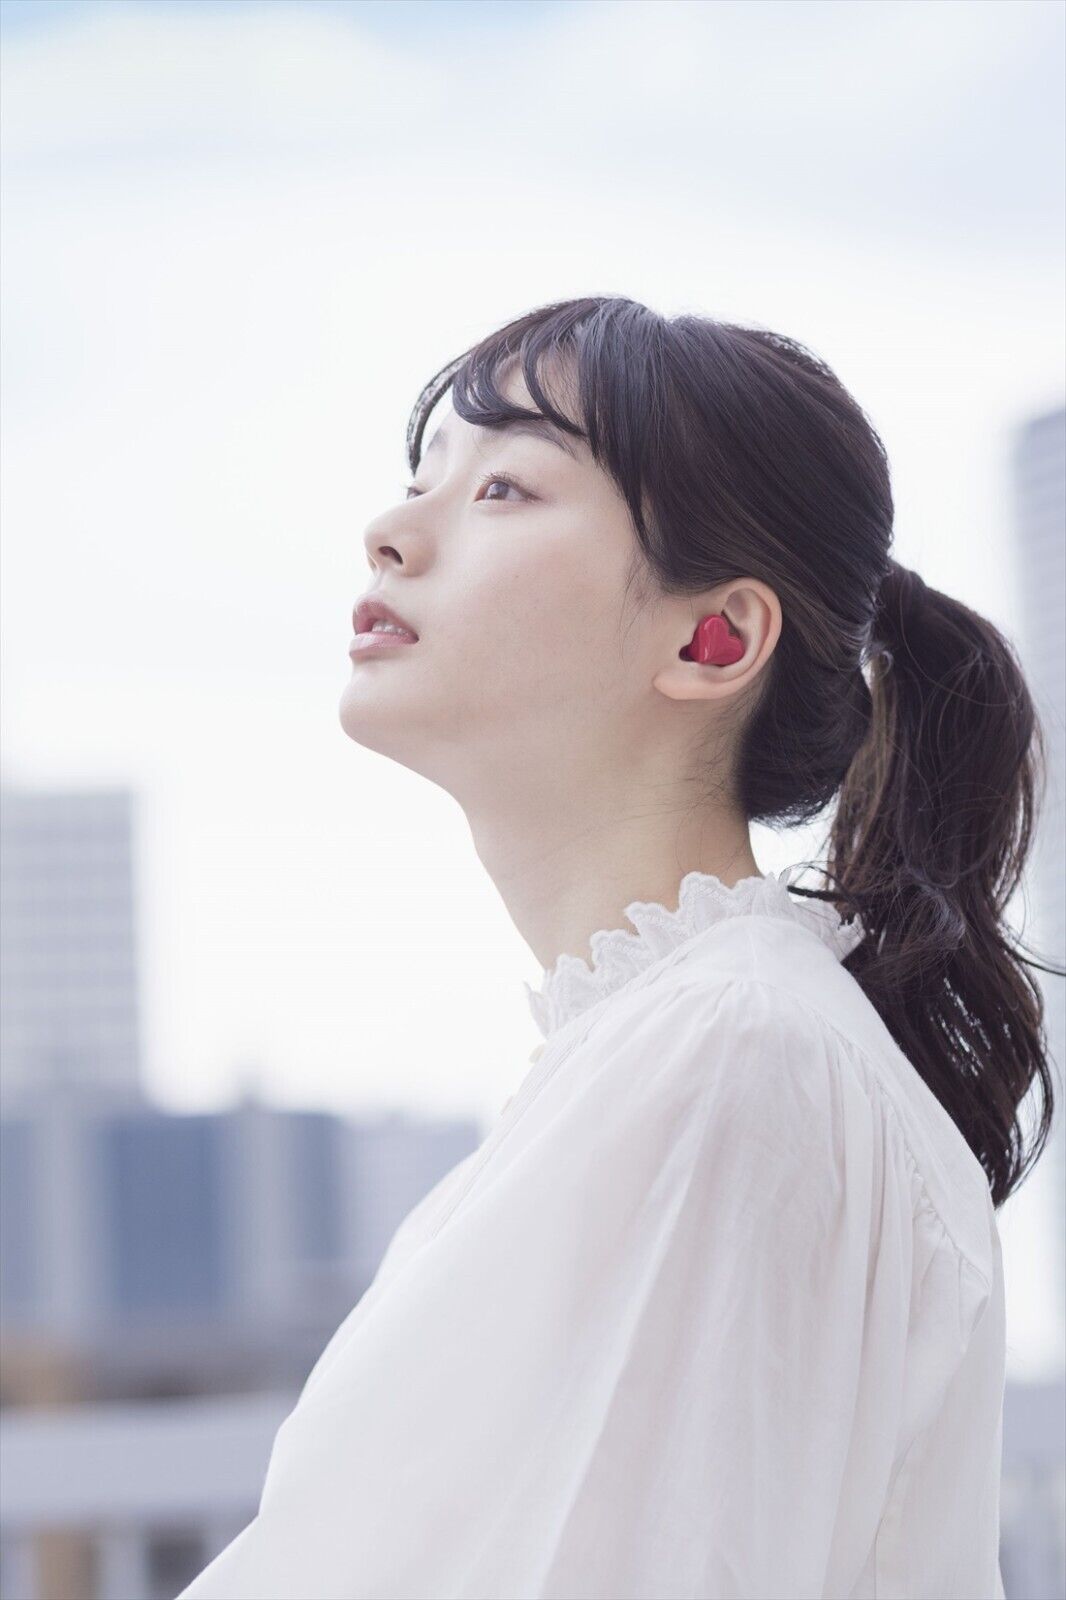 From Japan HeartBuds Heart Shaped Wireless Earphones